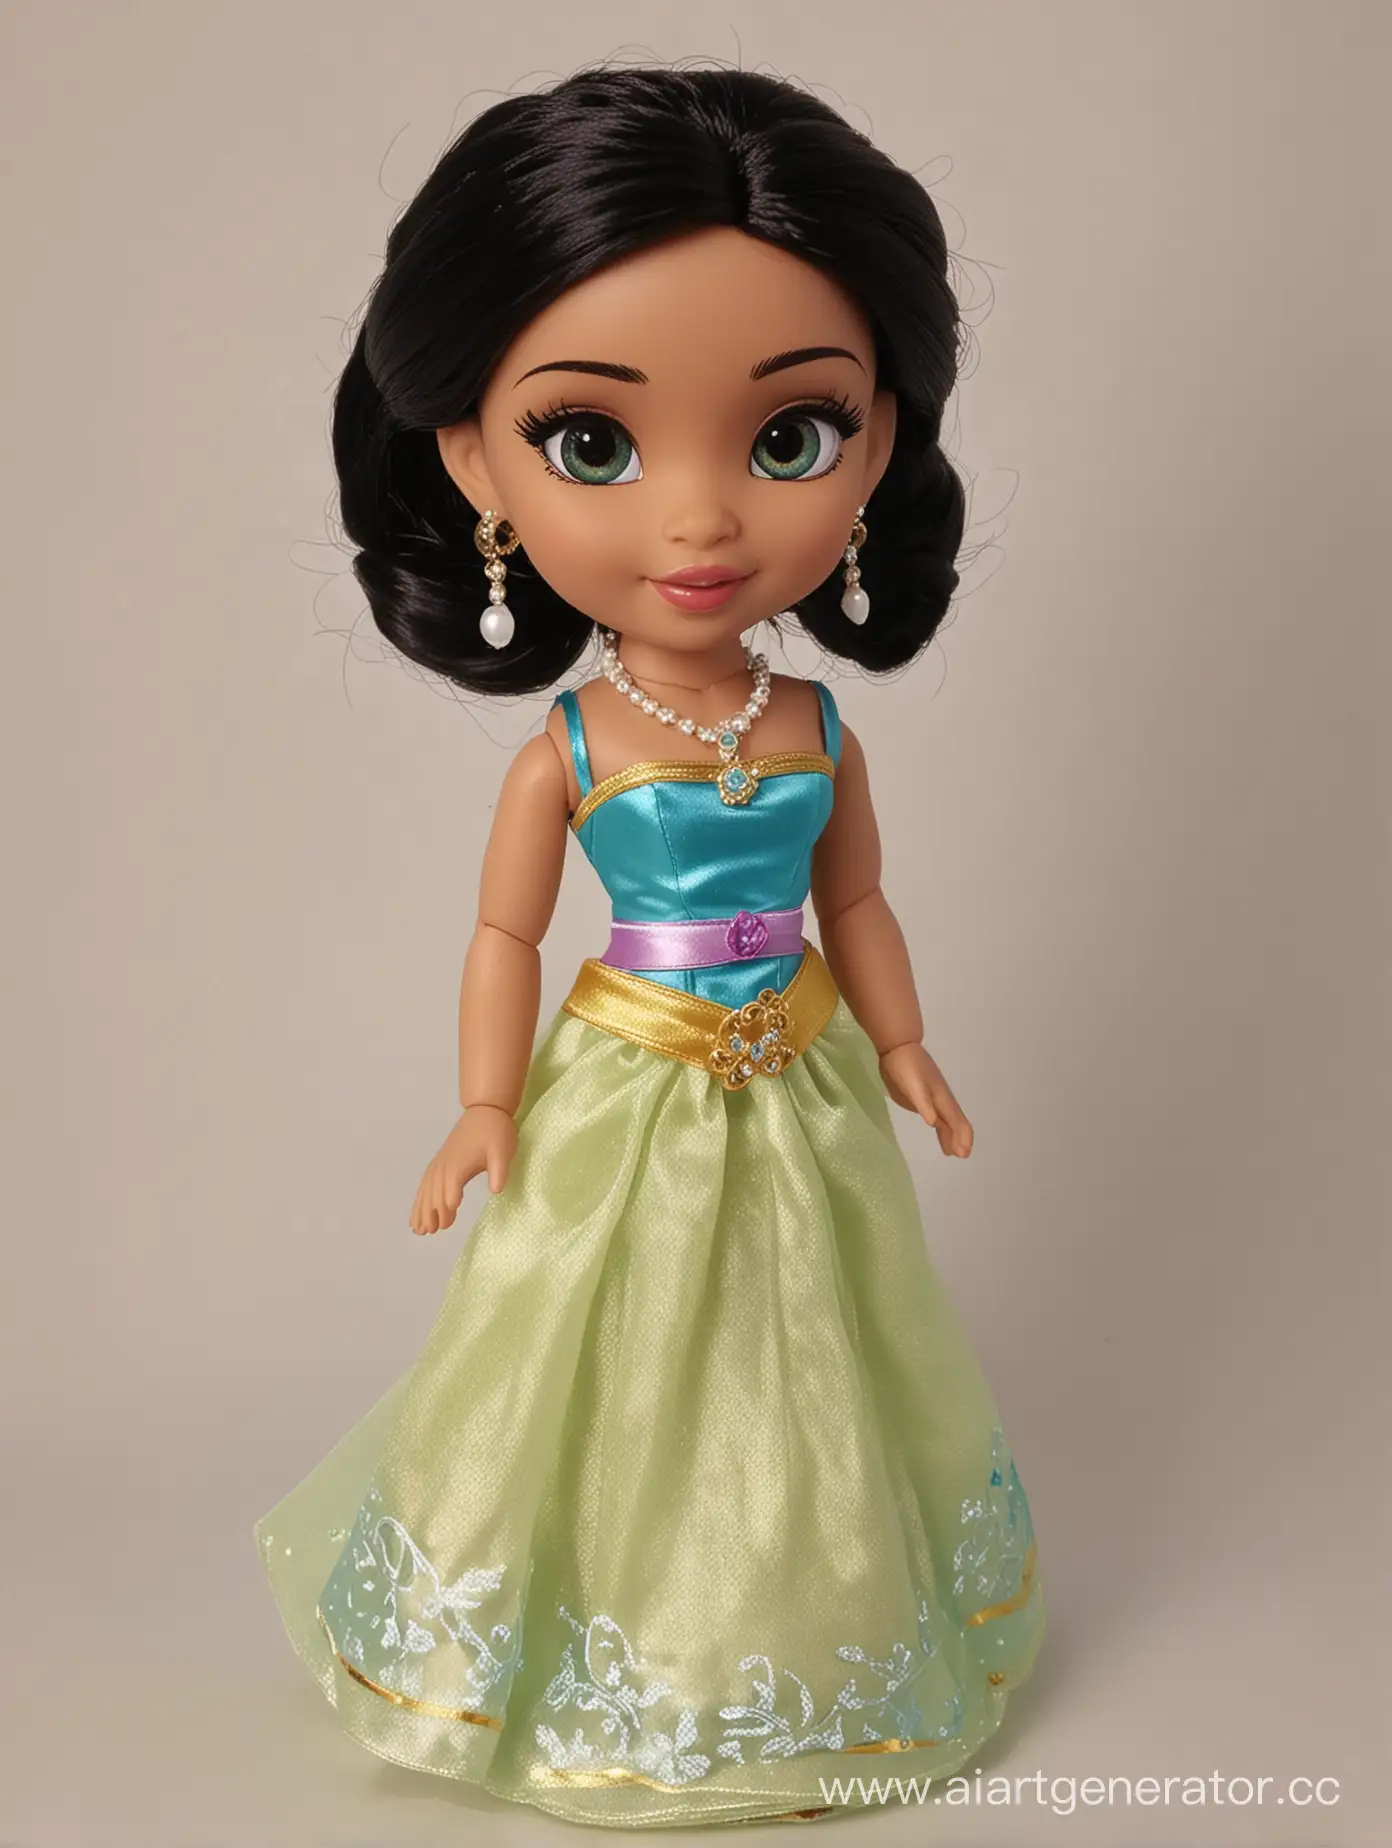 Disney-Princess-Jasmine-Doll-in-Exquisite-Costume